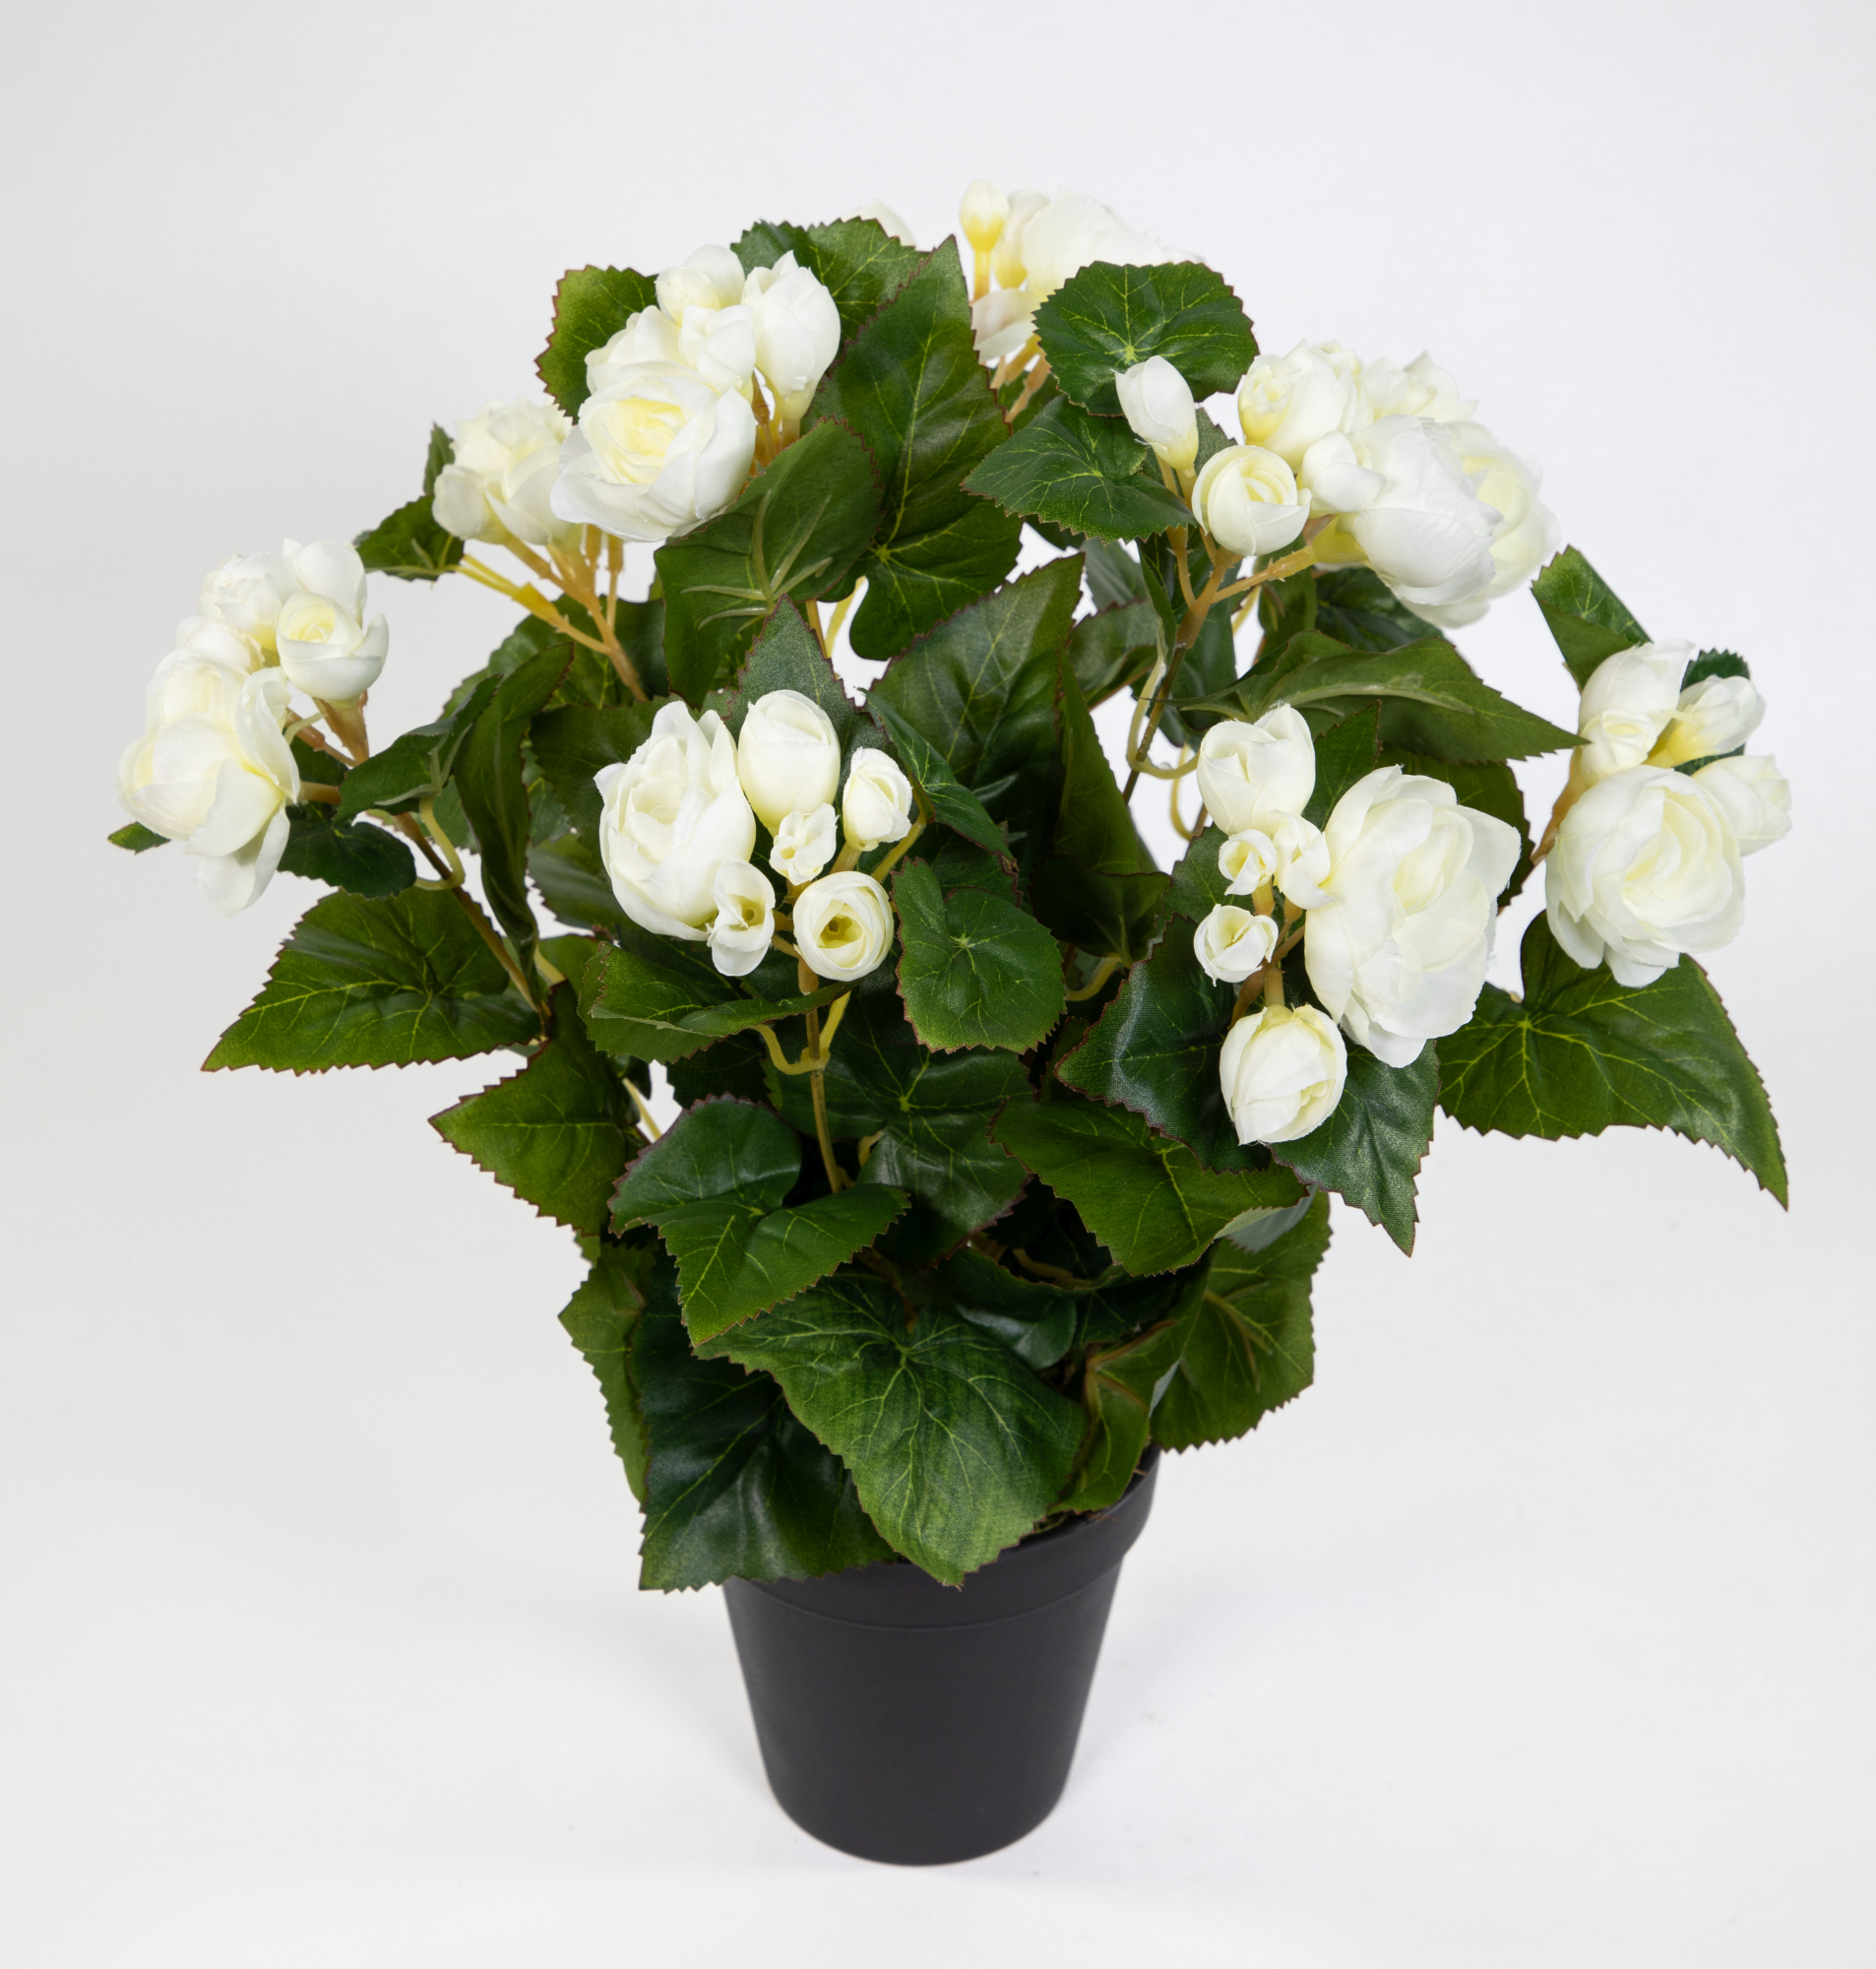 Begonie 38cm weiß im Topf Kunstpflanzen künstliche Begonienbusch Pflanze Kunstblumen künstlicher LM